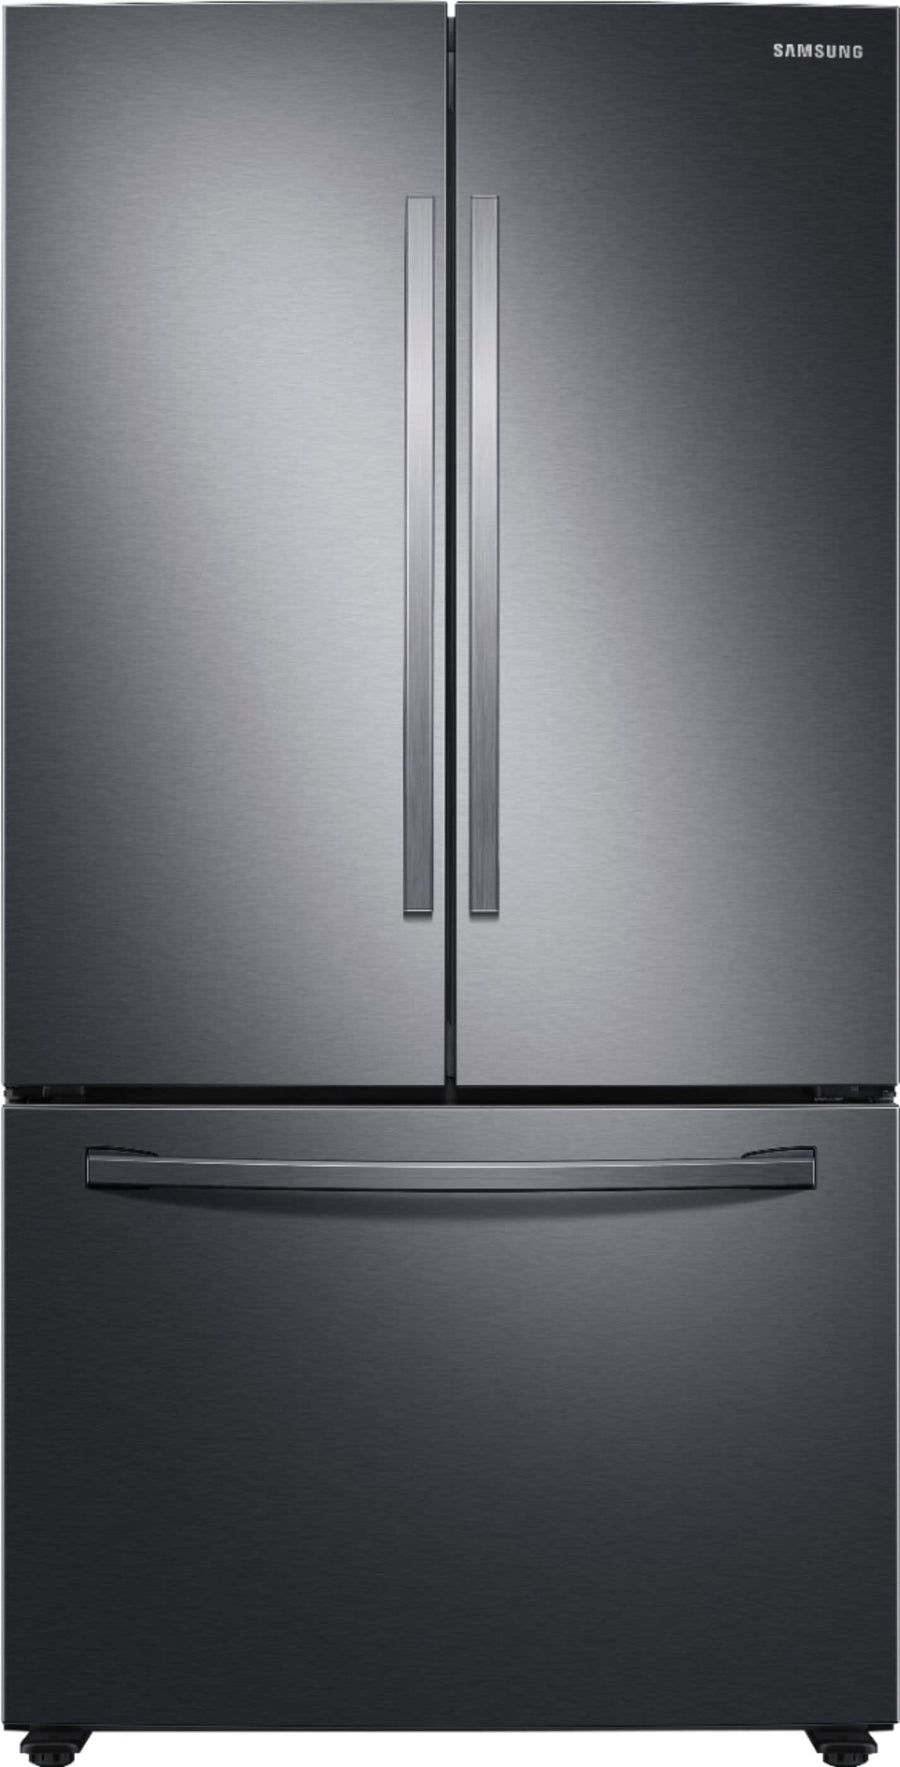 Samsung - 28 cu. ft. Large Capacity 3-Door French Door Refrigerator - Black stainless steel_0